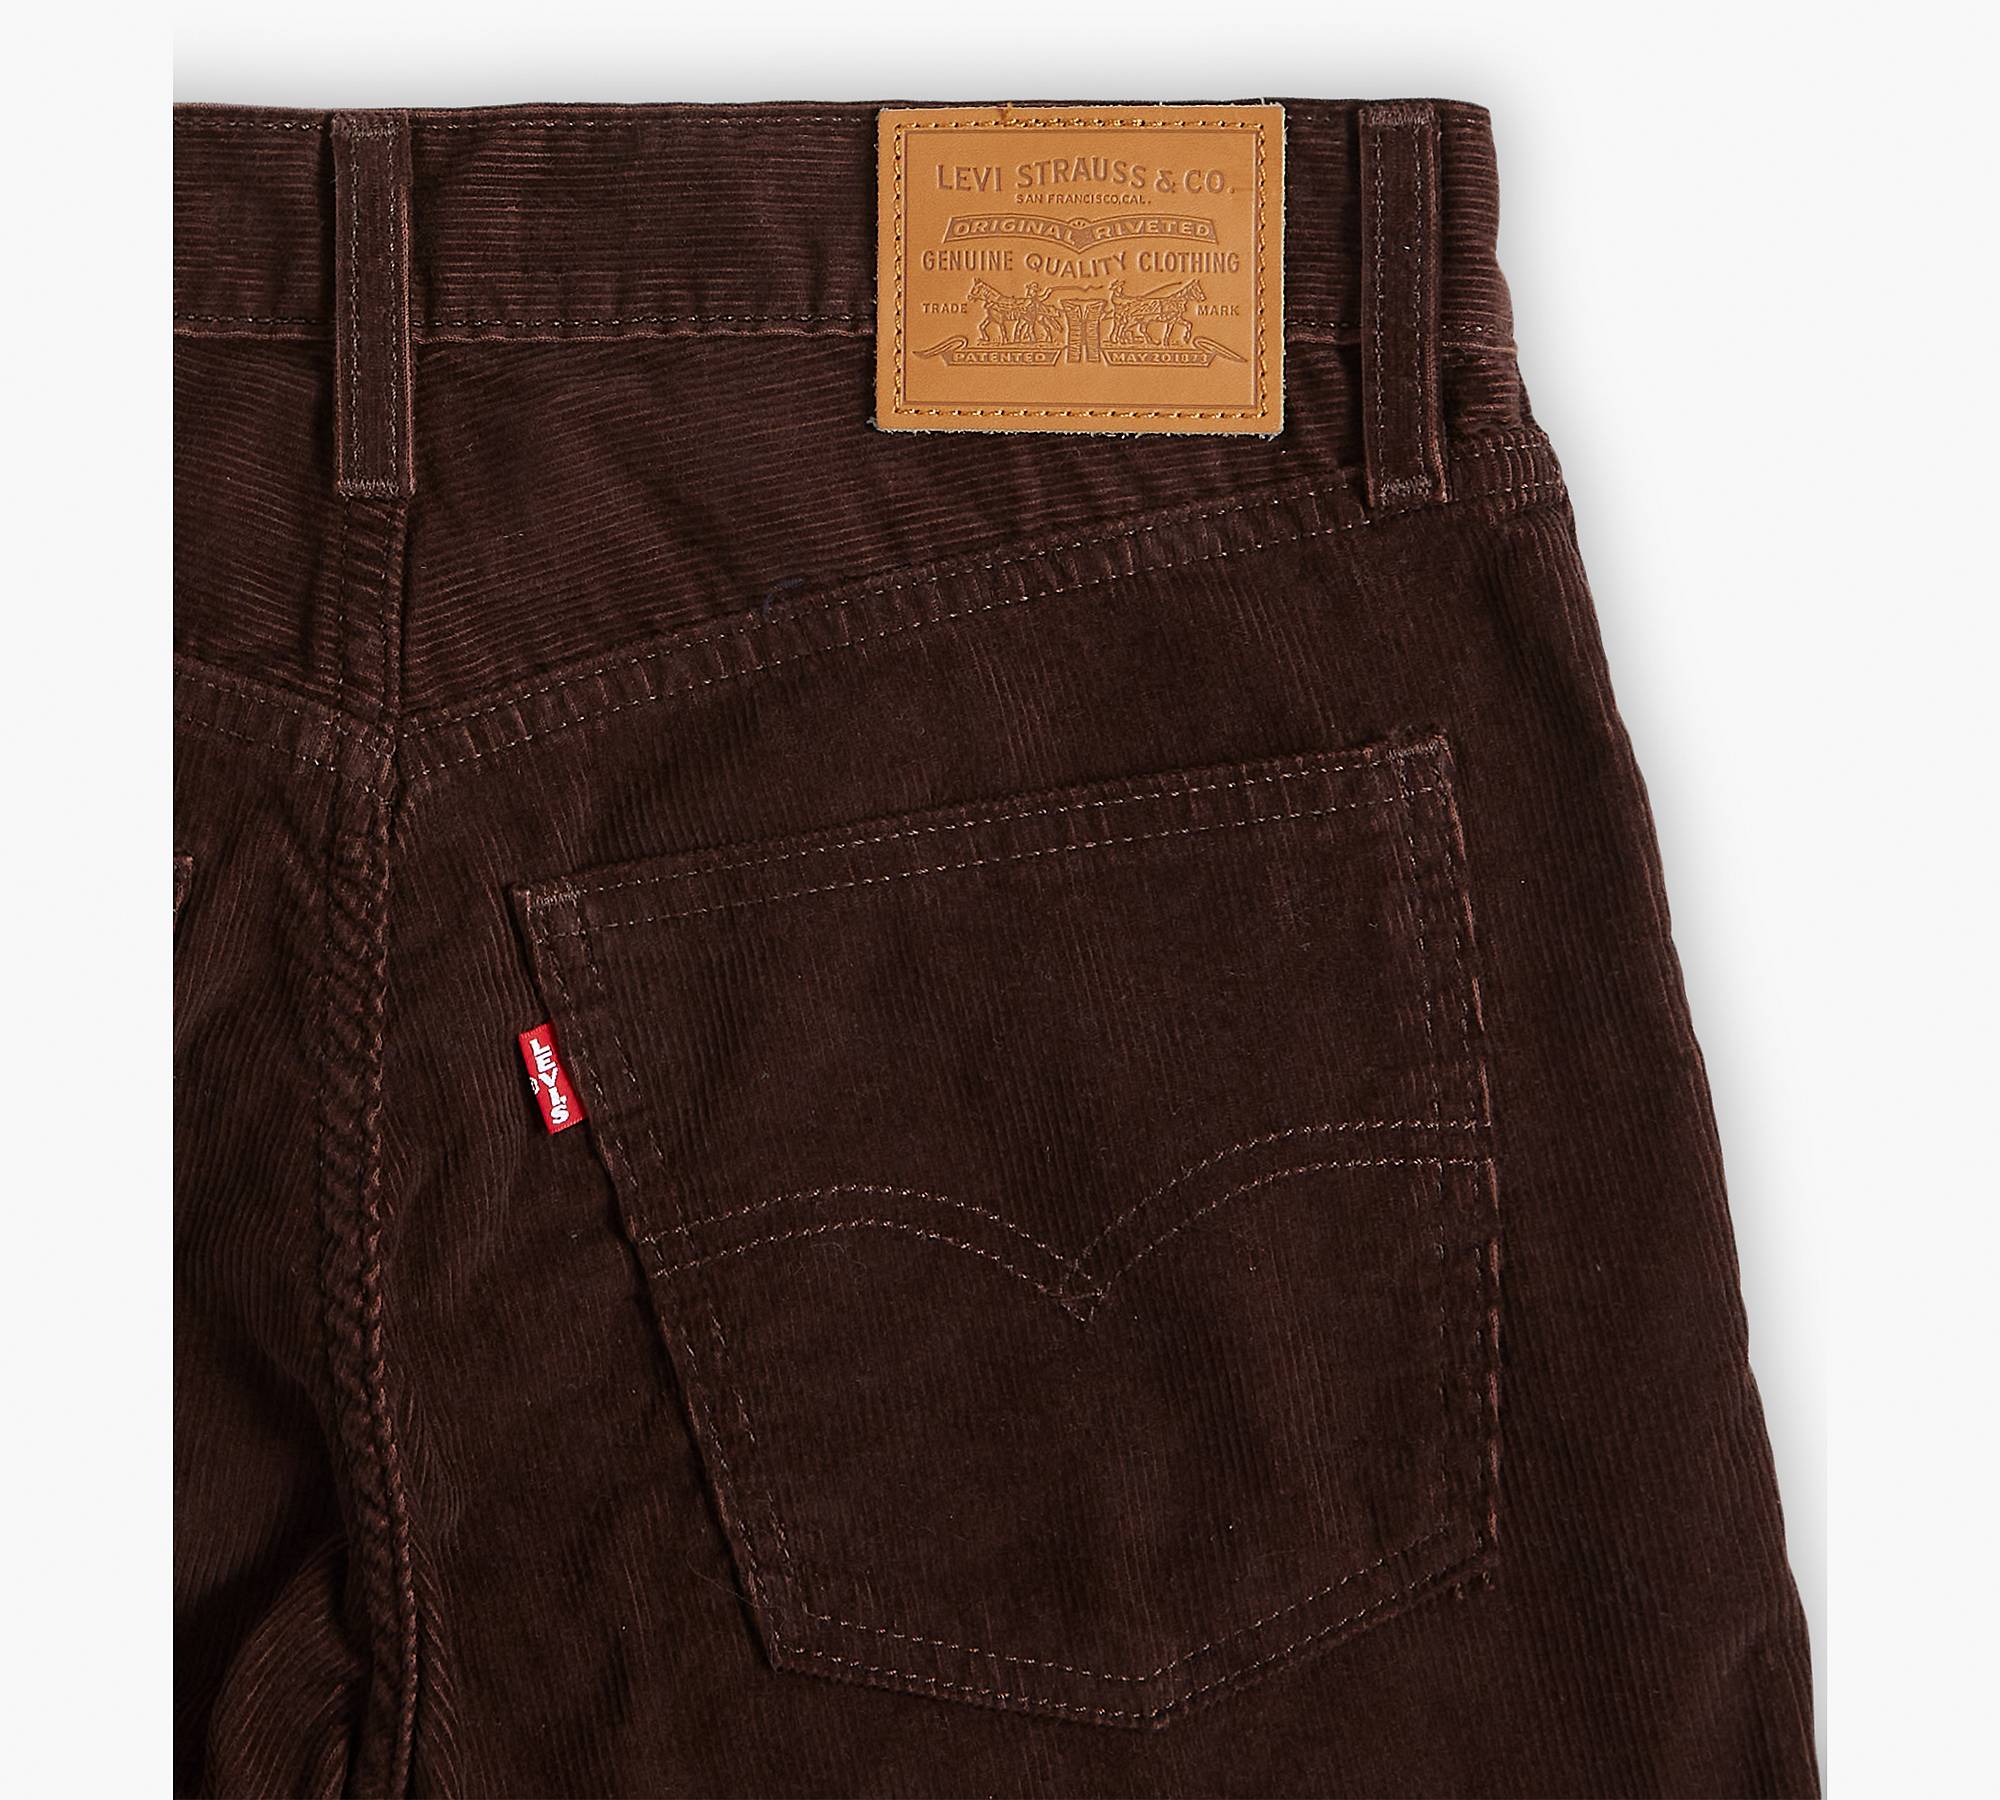 Middy Corduroy Bootcut Women's Pants - Brown